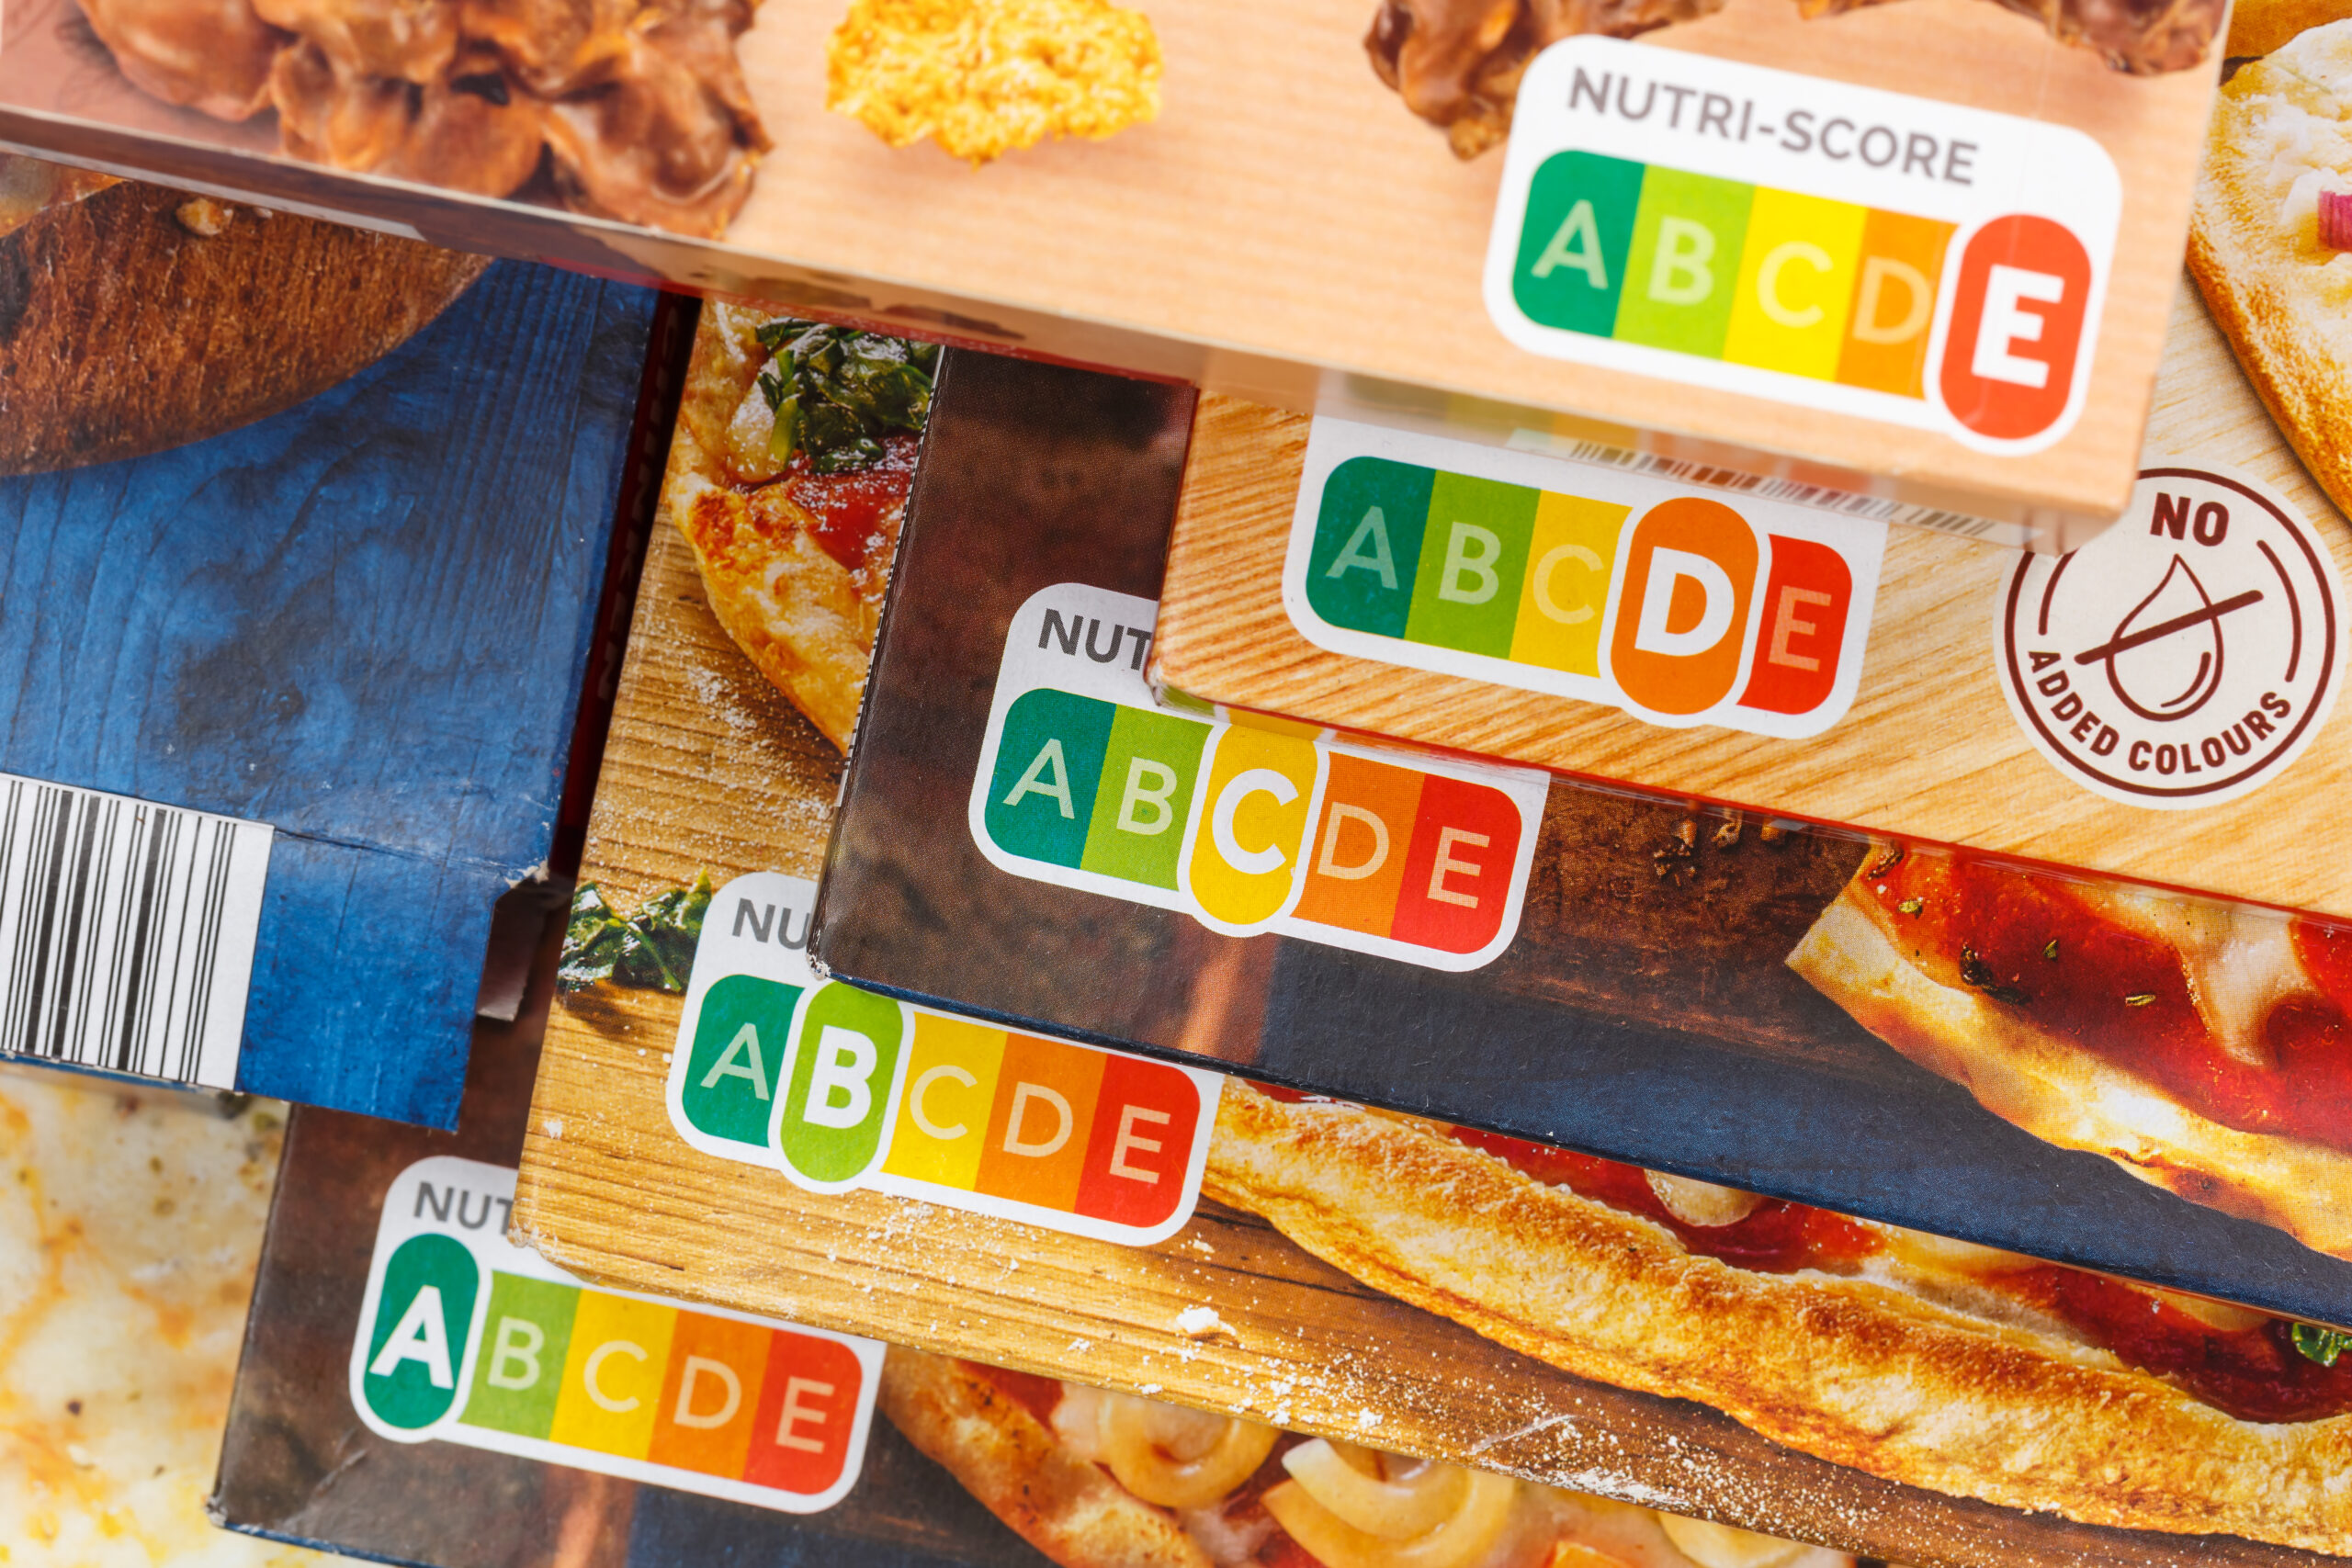 Der Nutri-Score auf verschiedenen Lebensmittelverpackungen